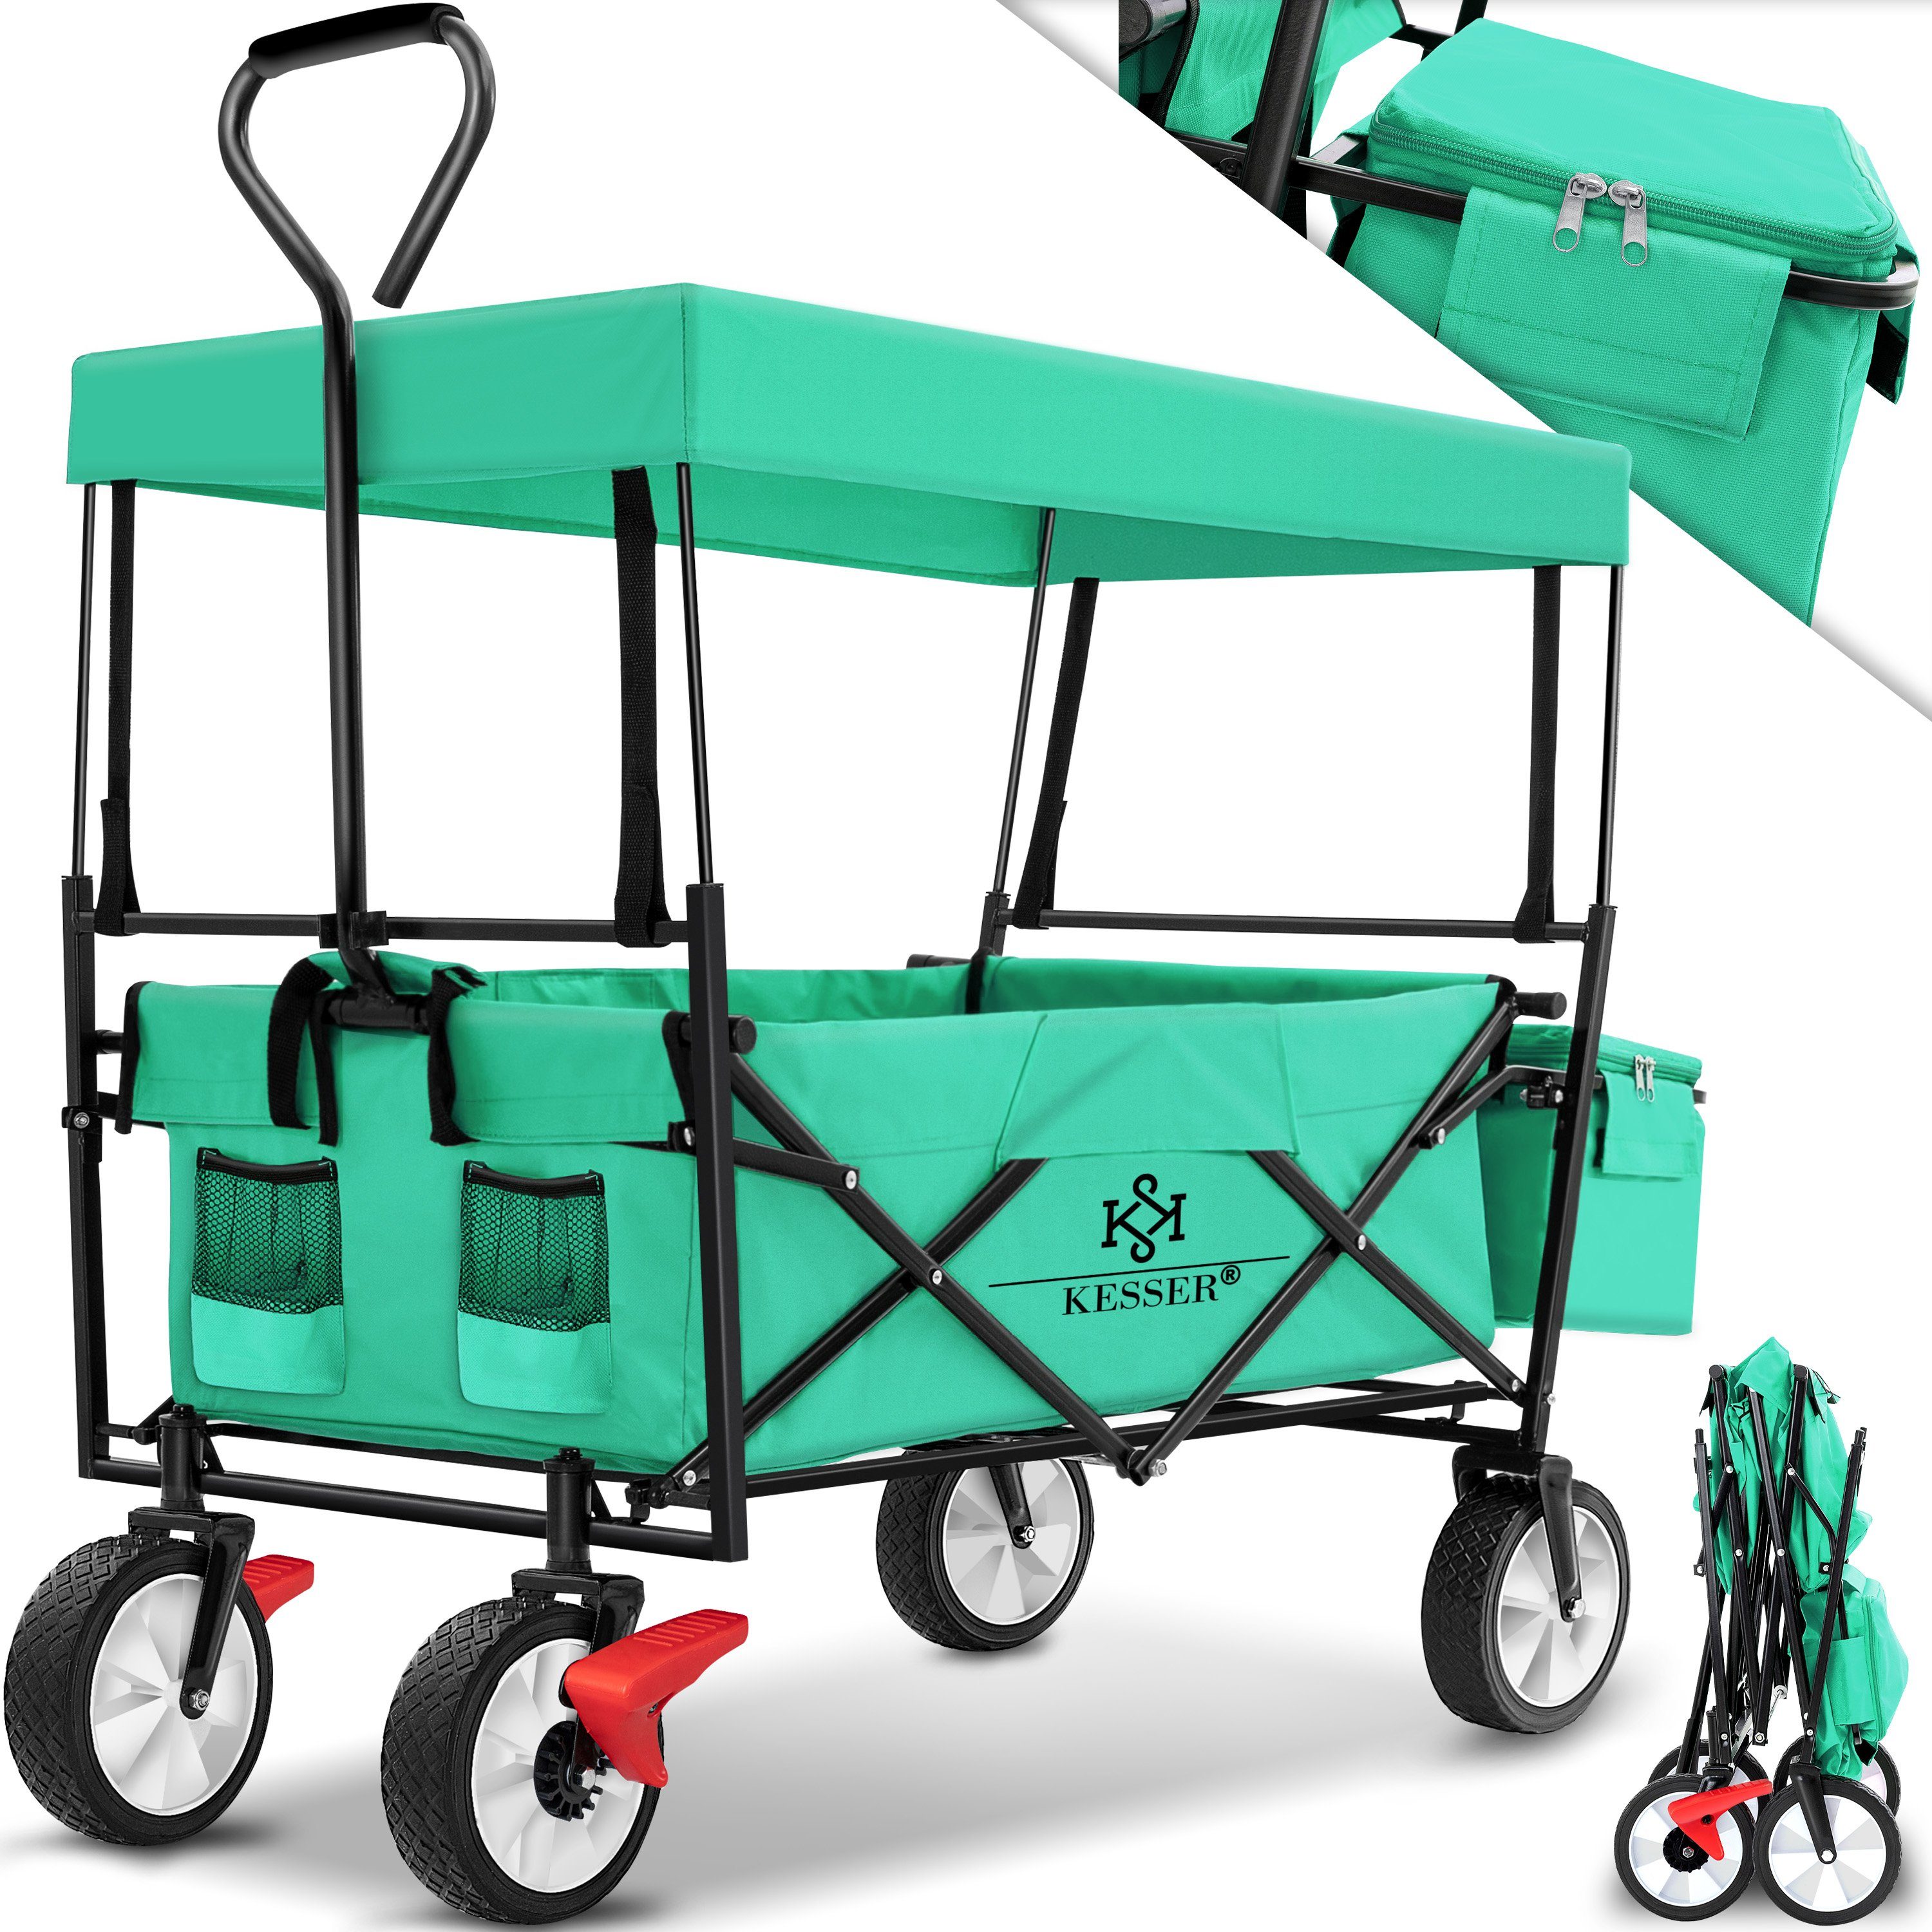 KESSER Bollerwagen, Bollerwagen faltbar mit Dach Handwagen Transportkarre Geräte Mint Grün